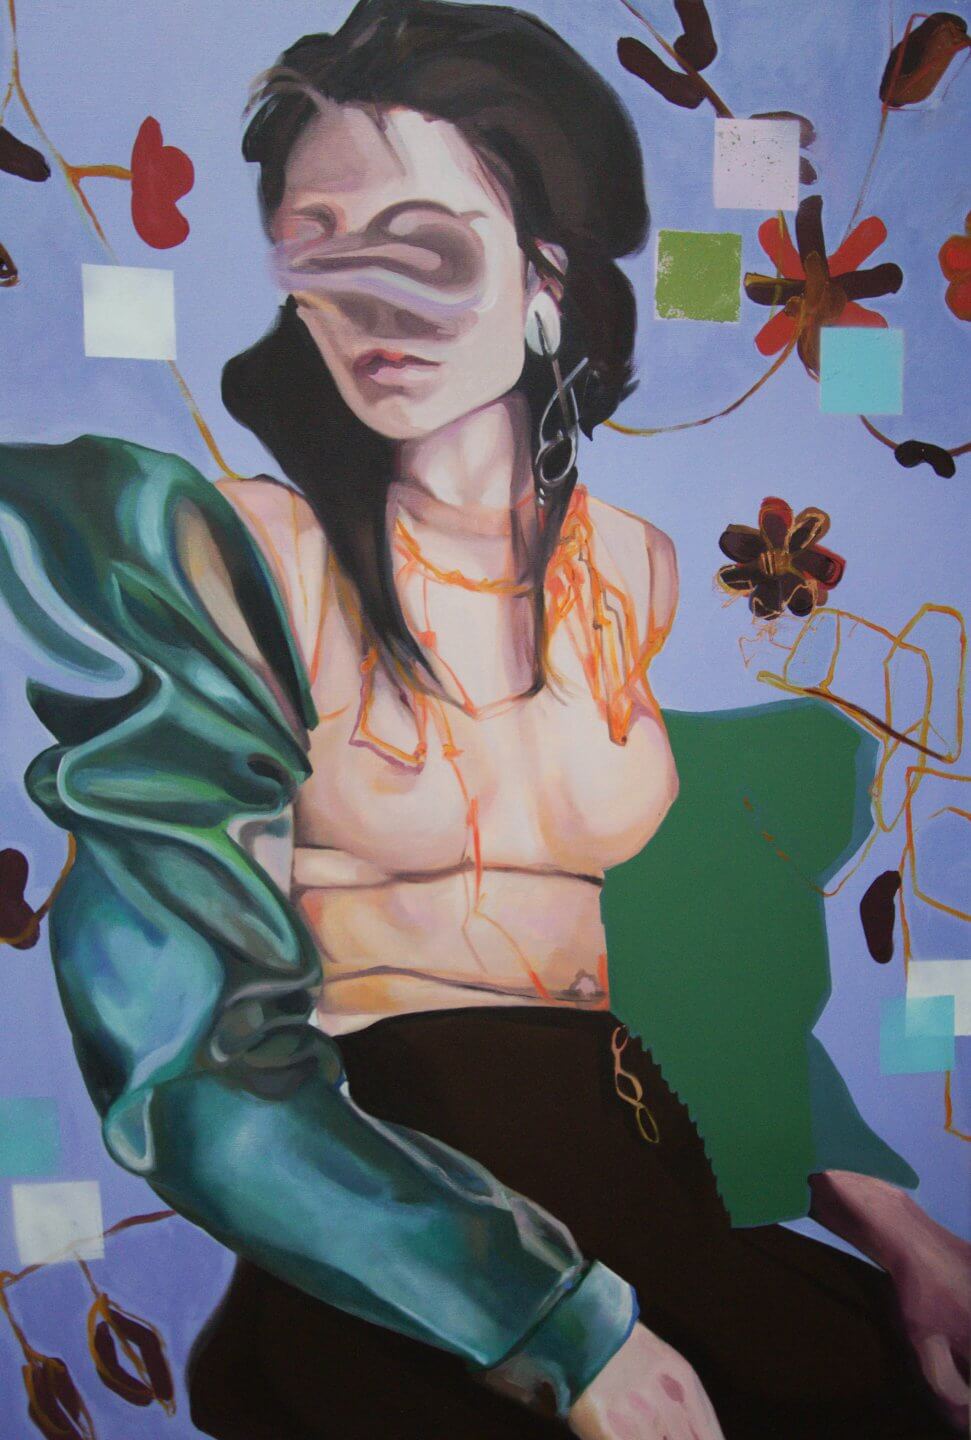 Galerie Benjamin Eck München Nathalie Pirotte, Interralated, 2017, Oils on canvas, 100 x 69 cm